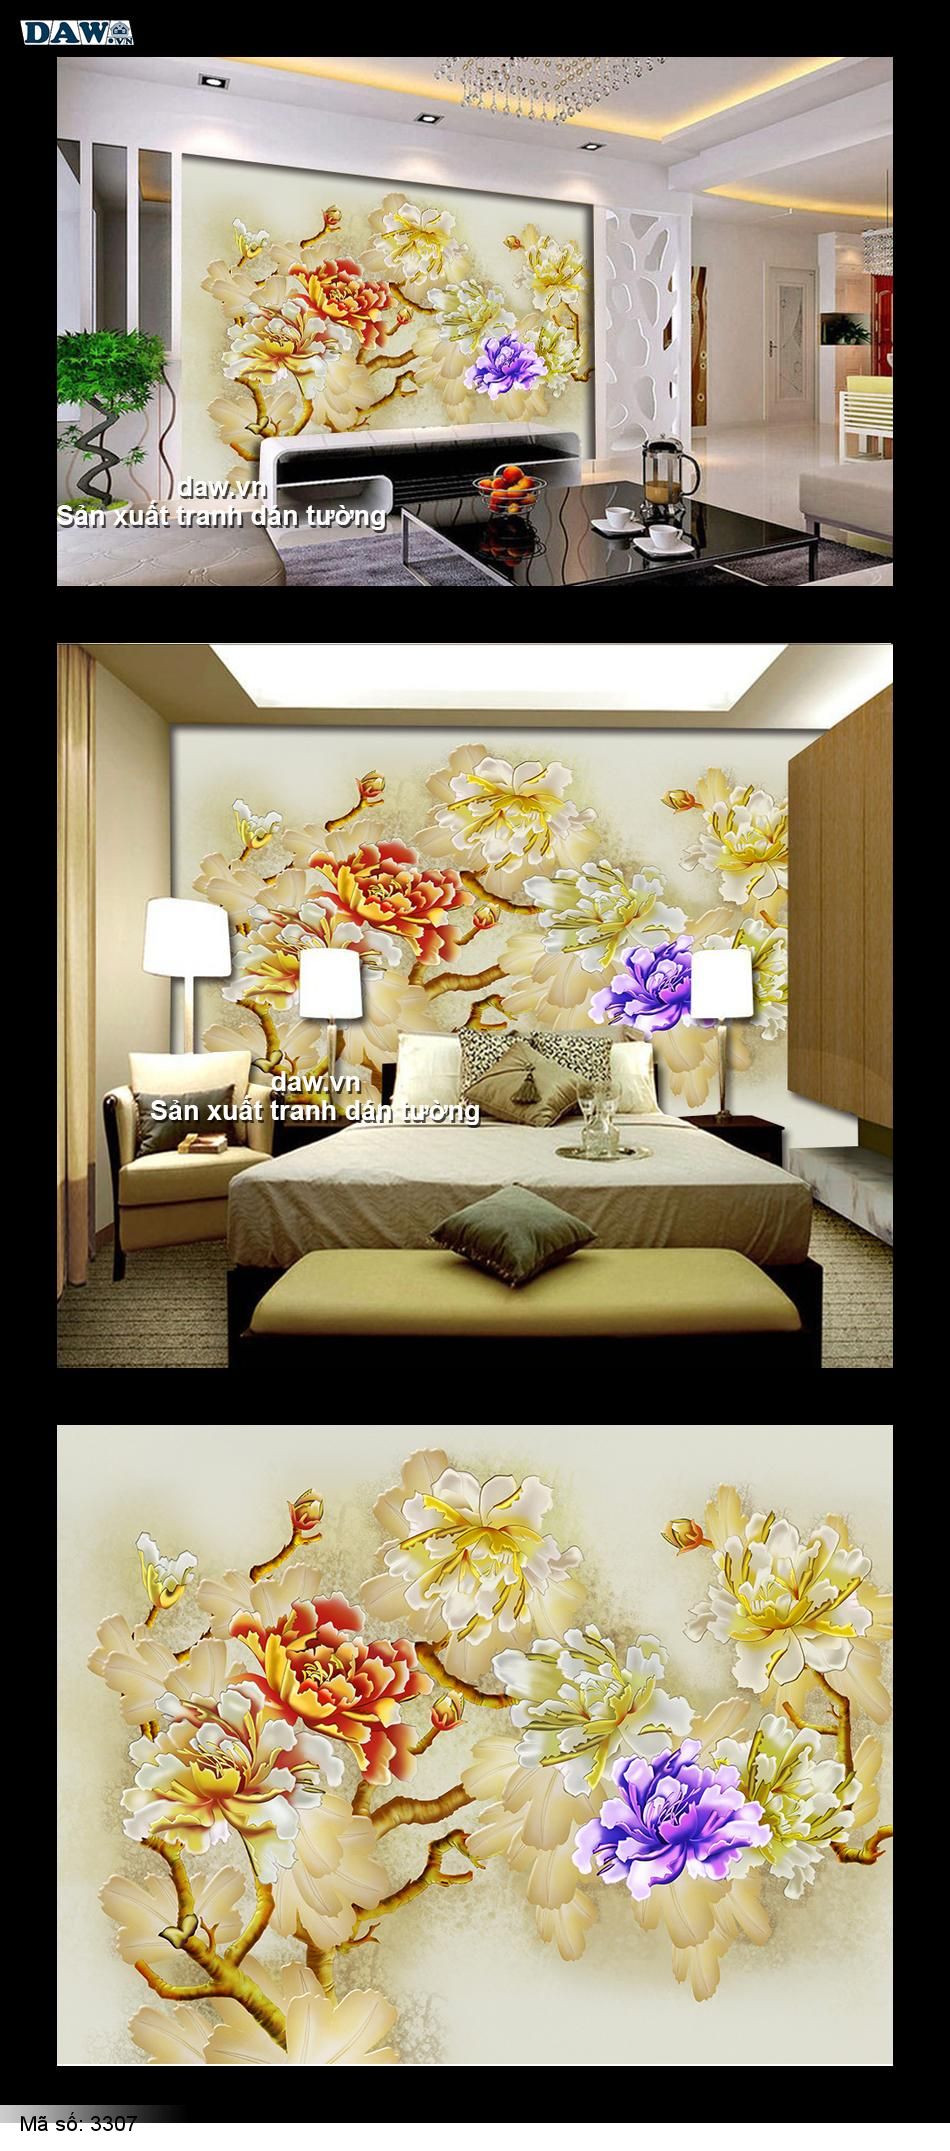 Tranh dán tường hoa lá, tranh hoa, hoa mẫu đơn đẹp, tranh vẽ đẹp, tranh dán tường phòng ngủ đẹp, tranh hàn quốc, daw, 3307